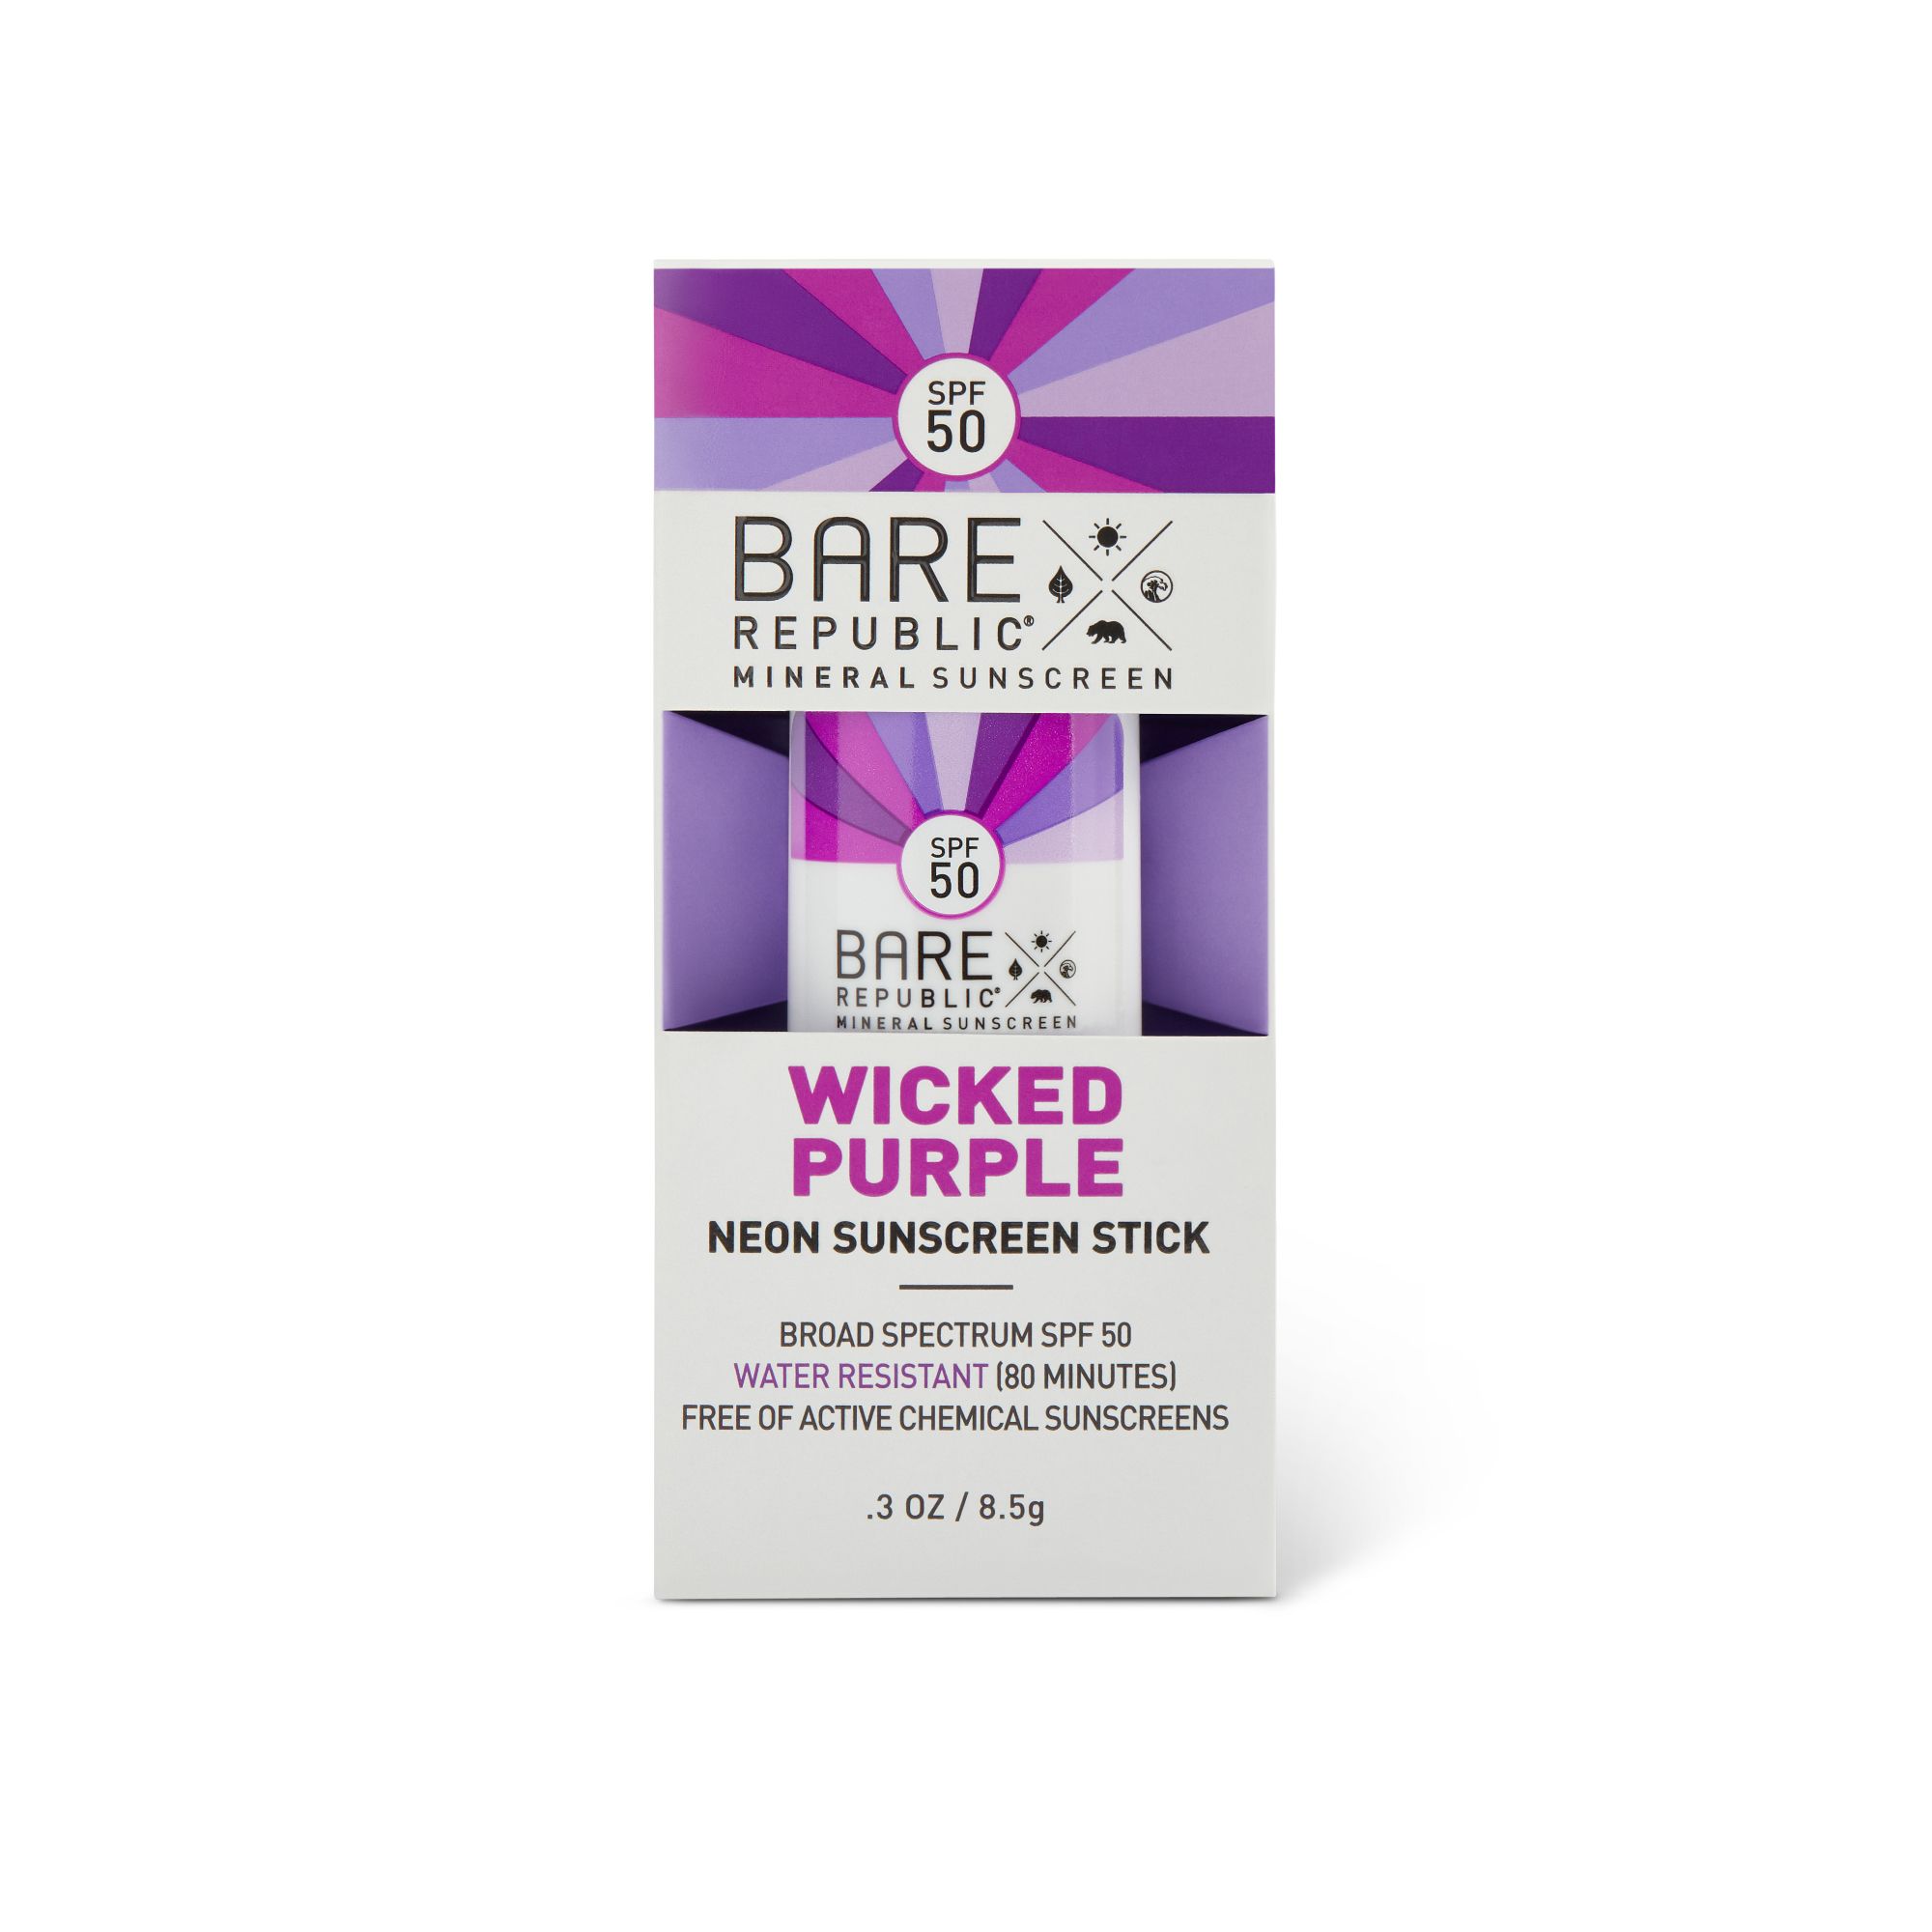 Bare Republic Mineral Sunscreen Neon Stick, Wicked Purple, SPF 50 - 0.3 oz